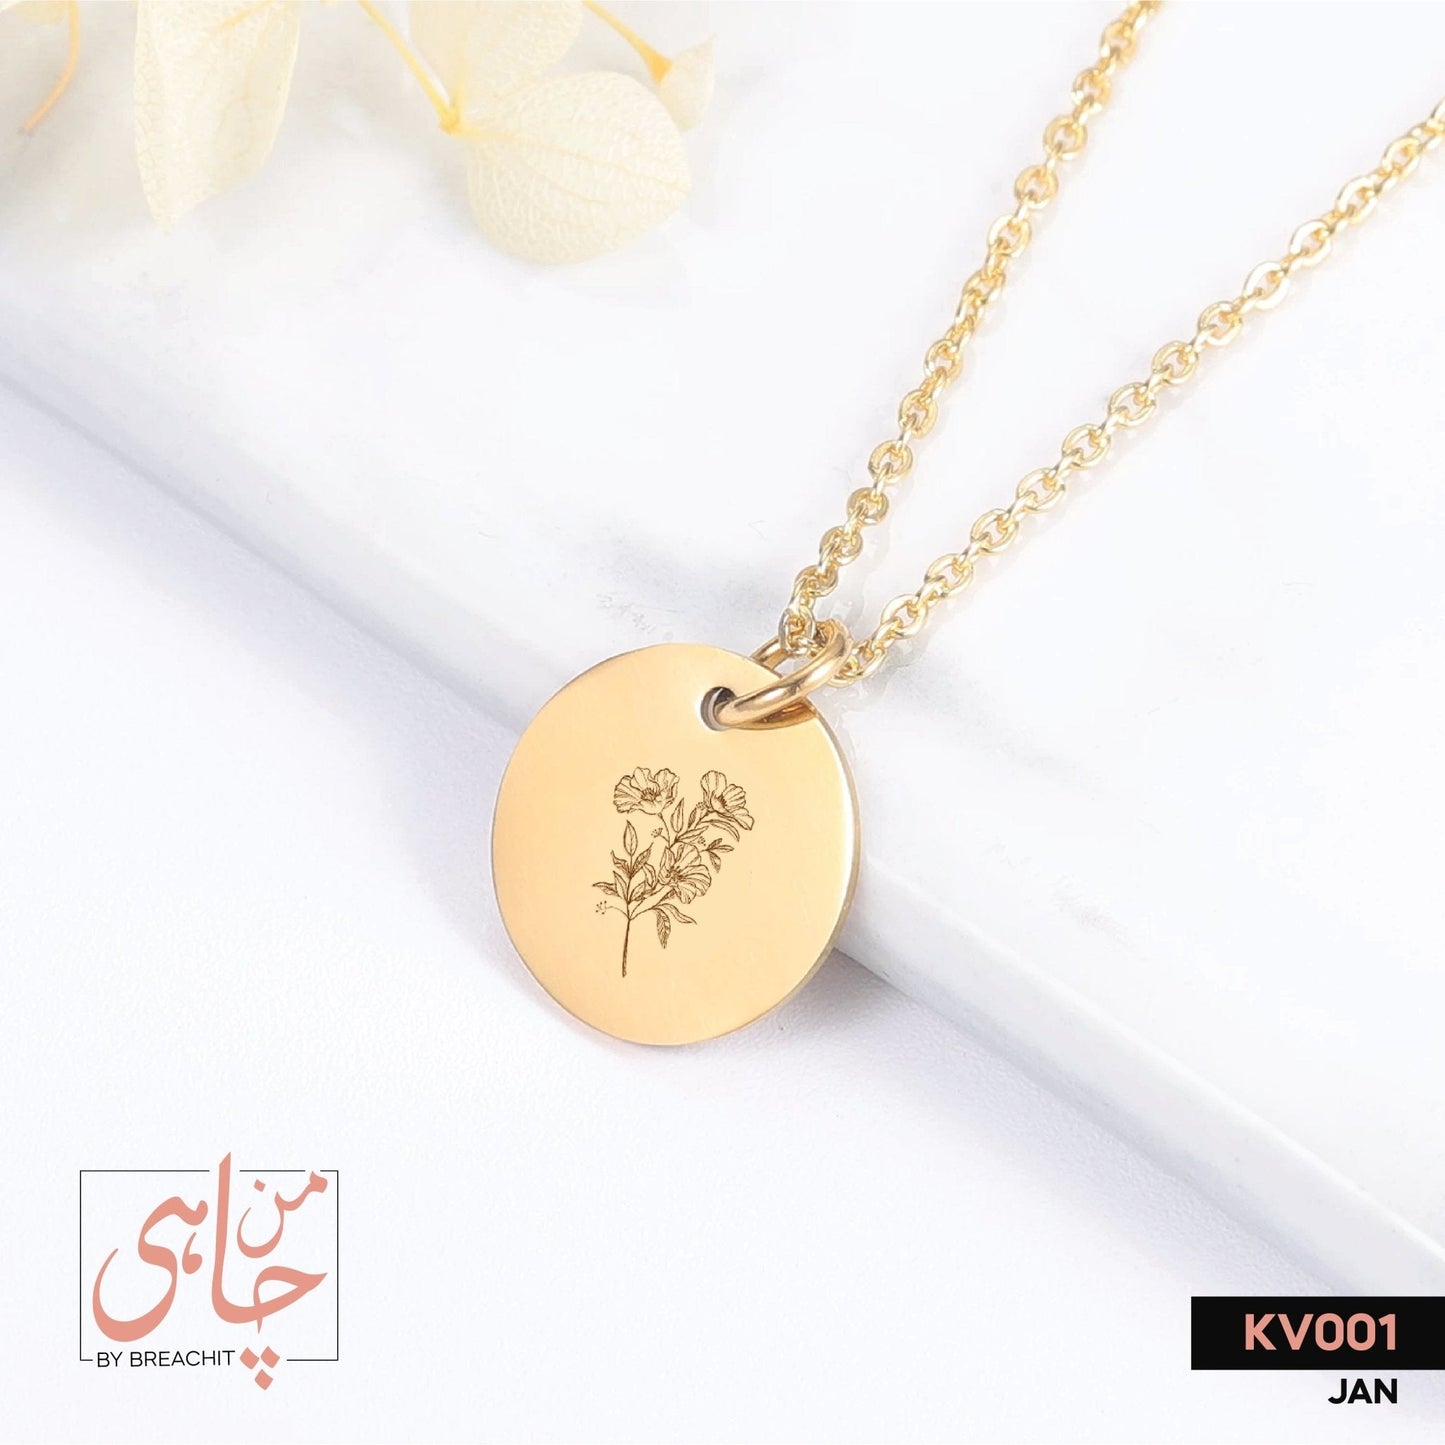 KV001 Birth Month Flower Necklace - BREACHIT